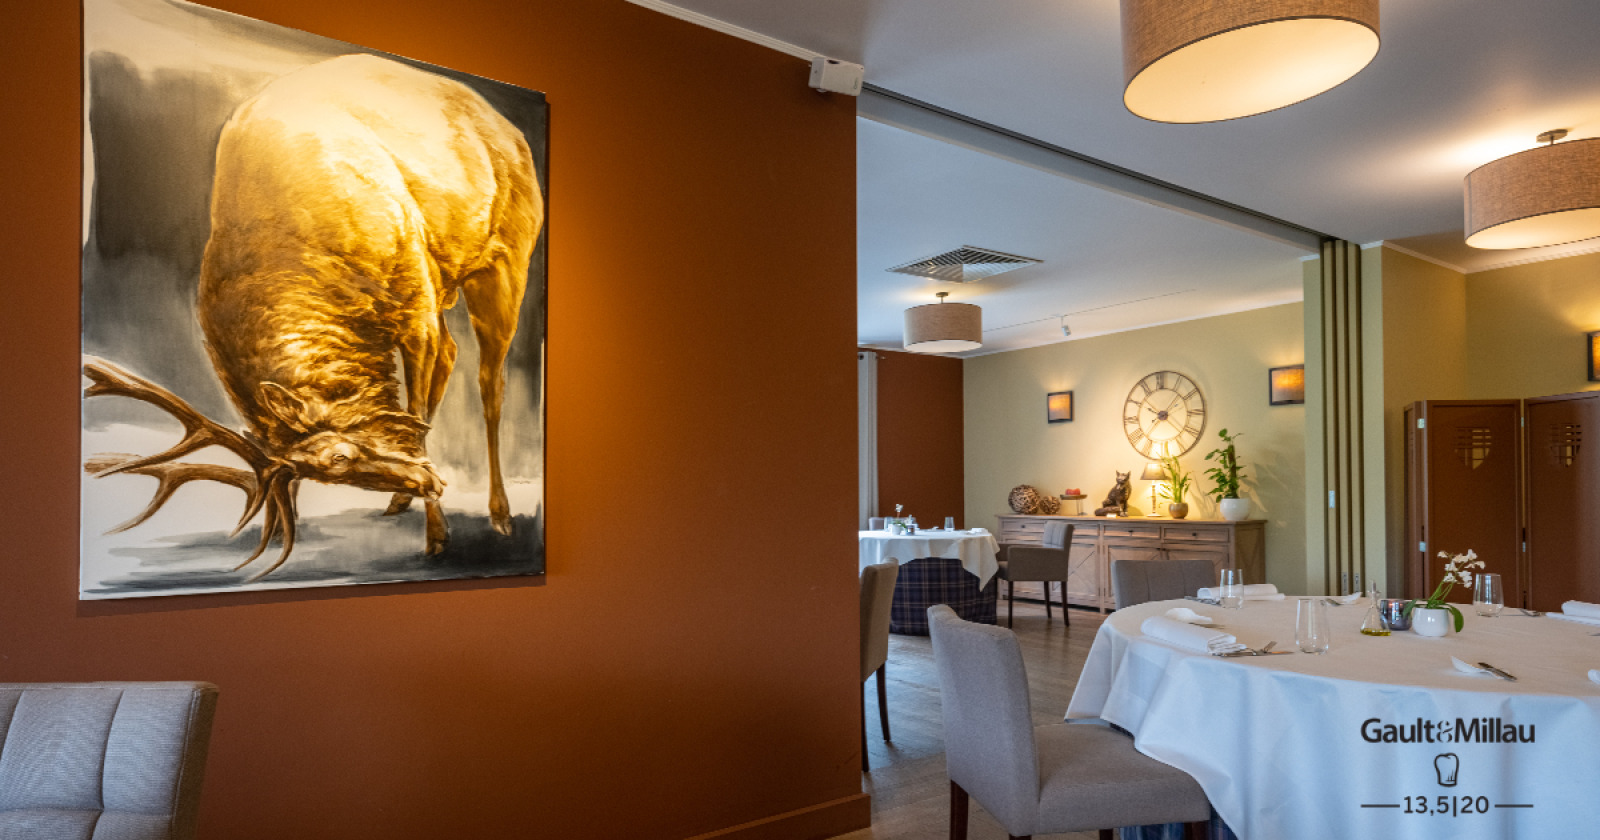 Salle du restaurant de l'hôtel La Barrière de Transinne à Libin en province de Luxembourg